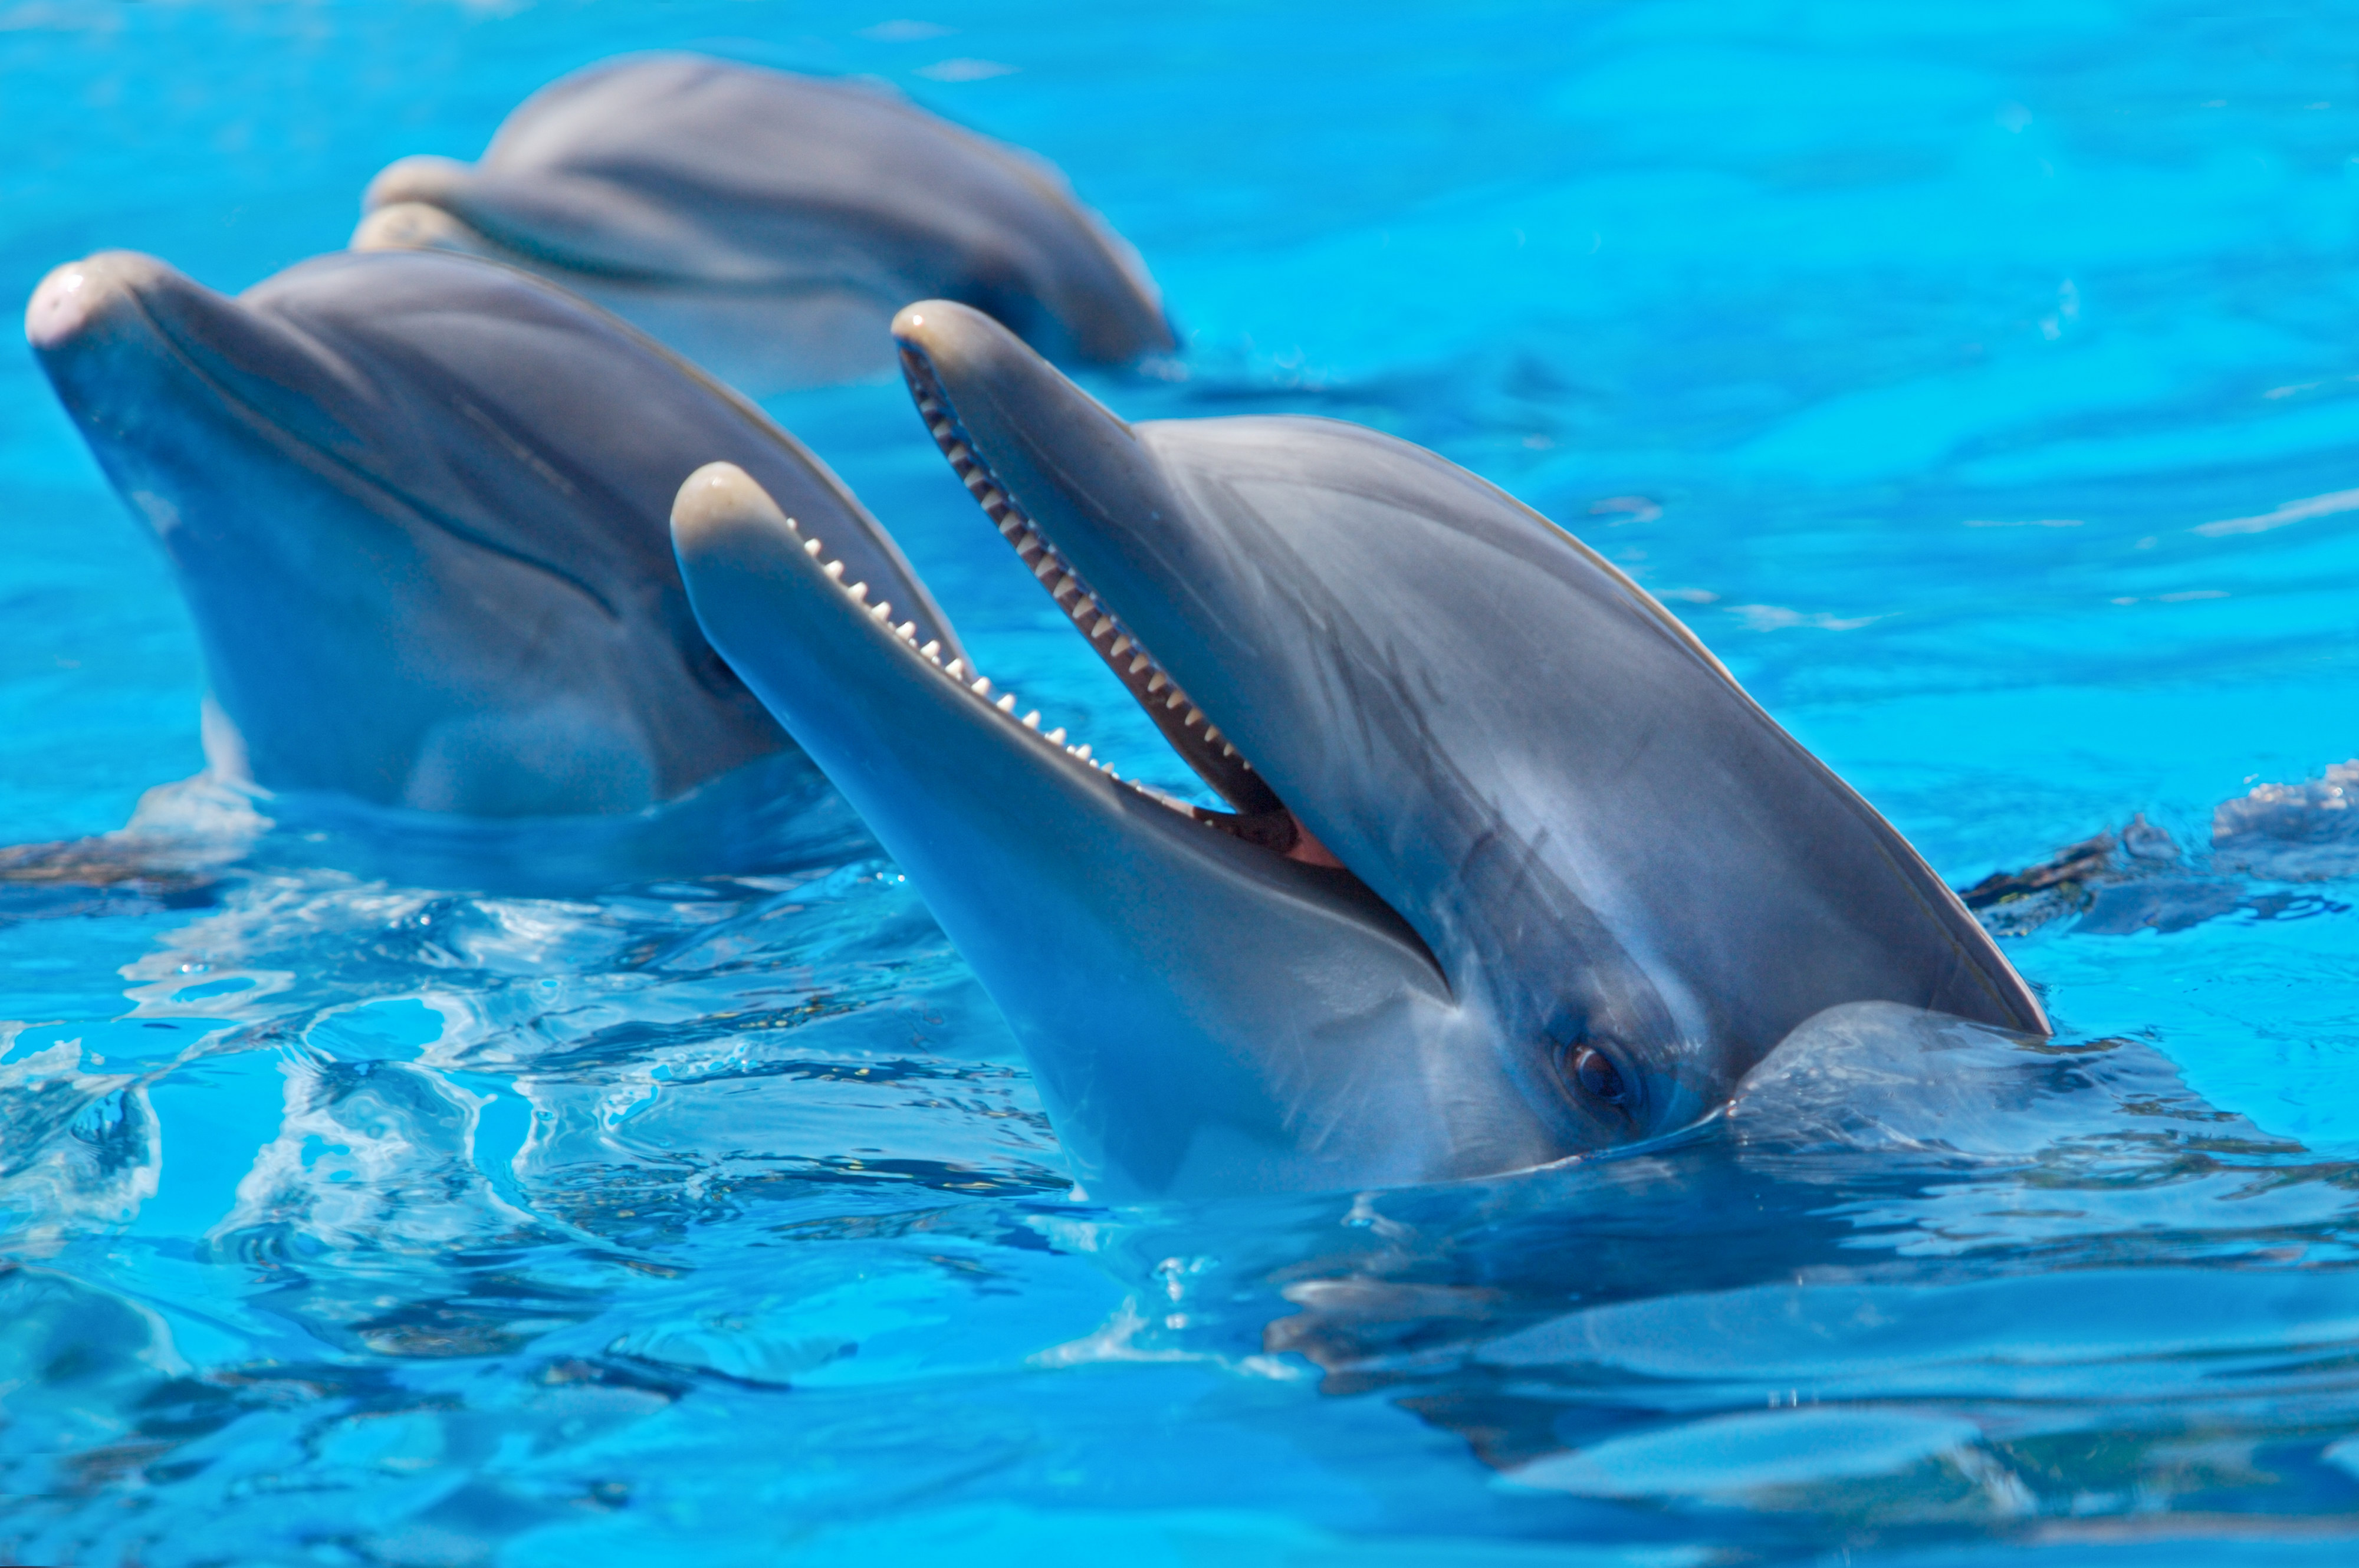 دانلود عکس و وکتور دلفین زیبا و وحشی در داخل آب